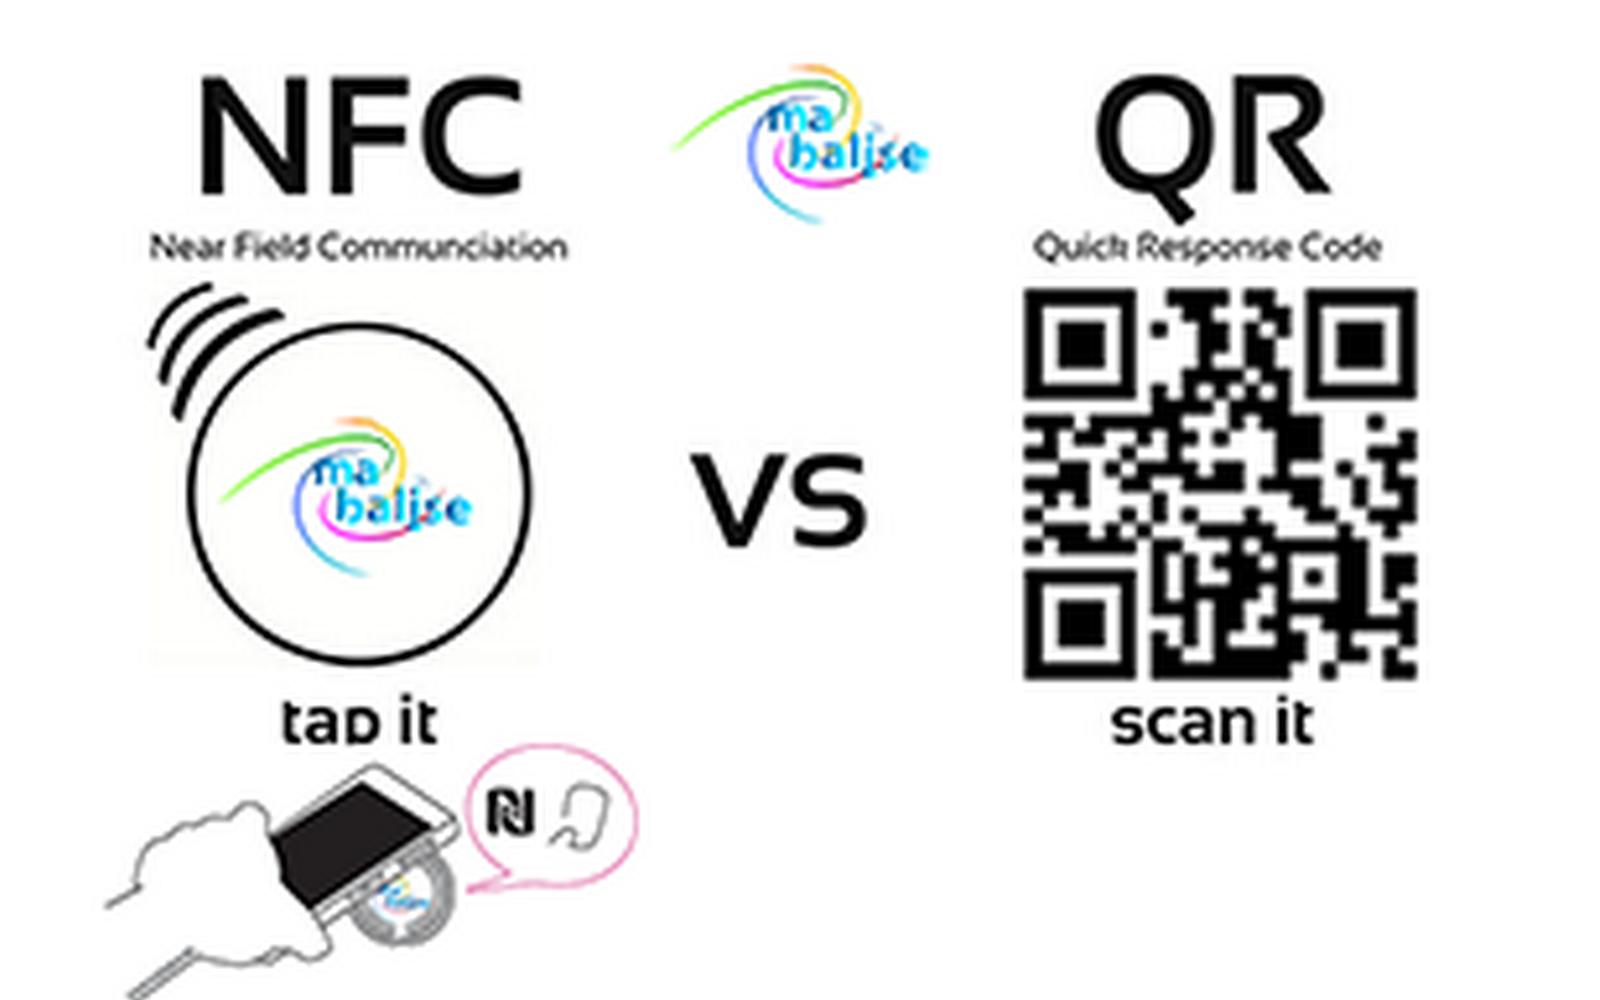 Quali sono i vantaggi dell'NFC rispetto al codice QR?